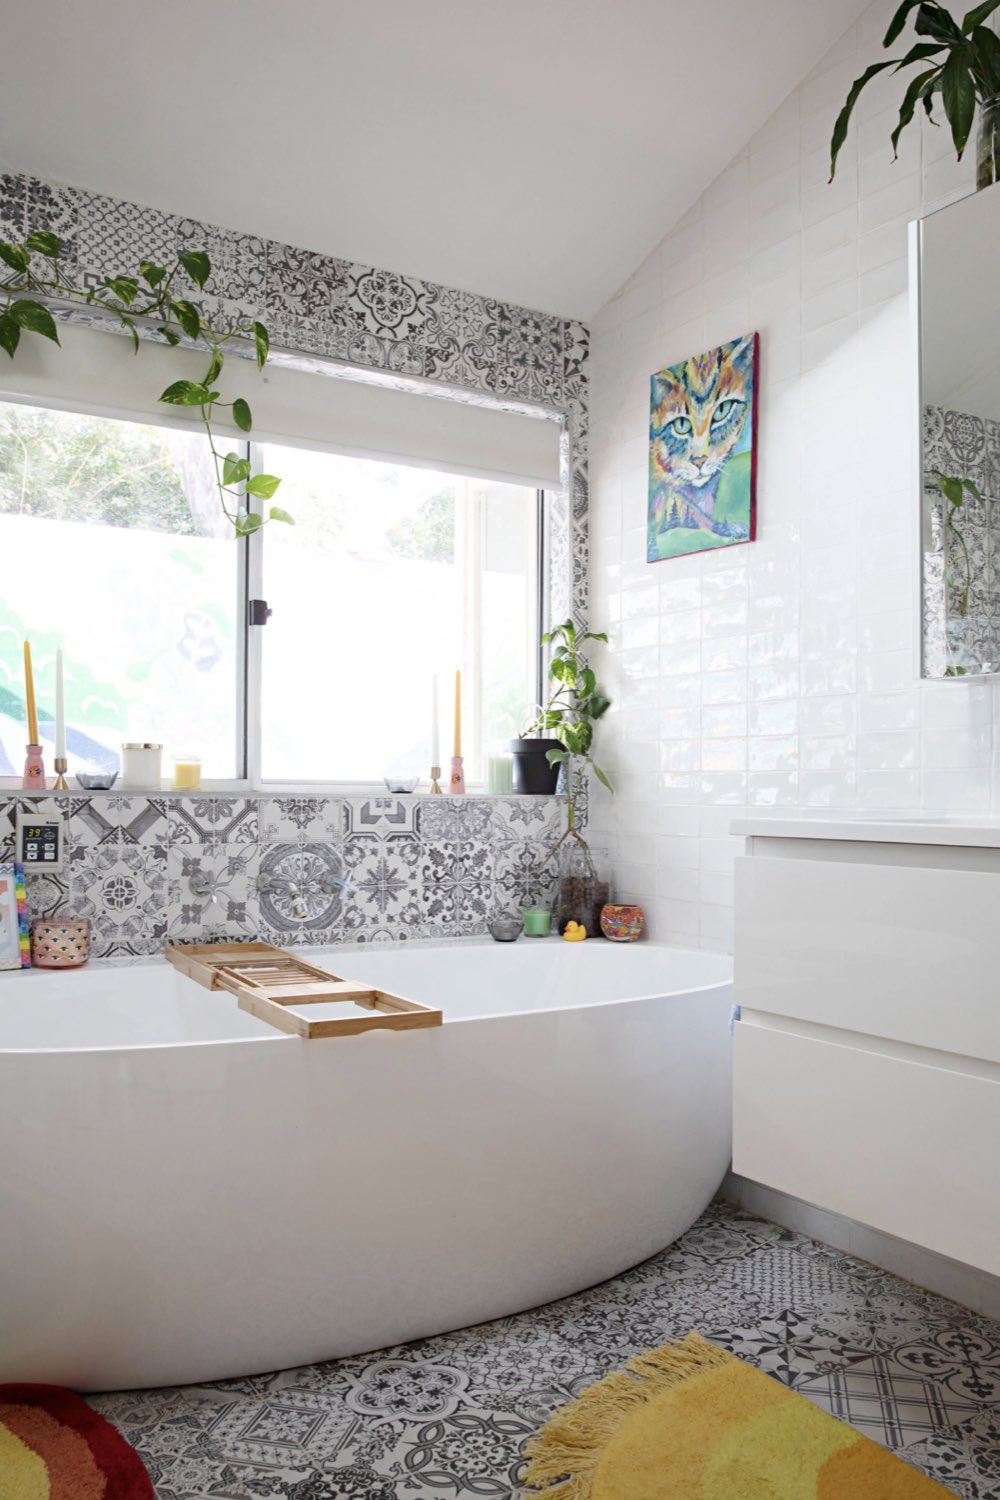 maison deco pop hyper coloree salle de bain avec baignoire mur carreaux de ciment gris